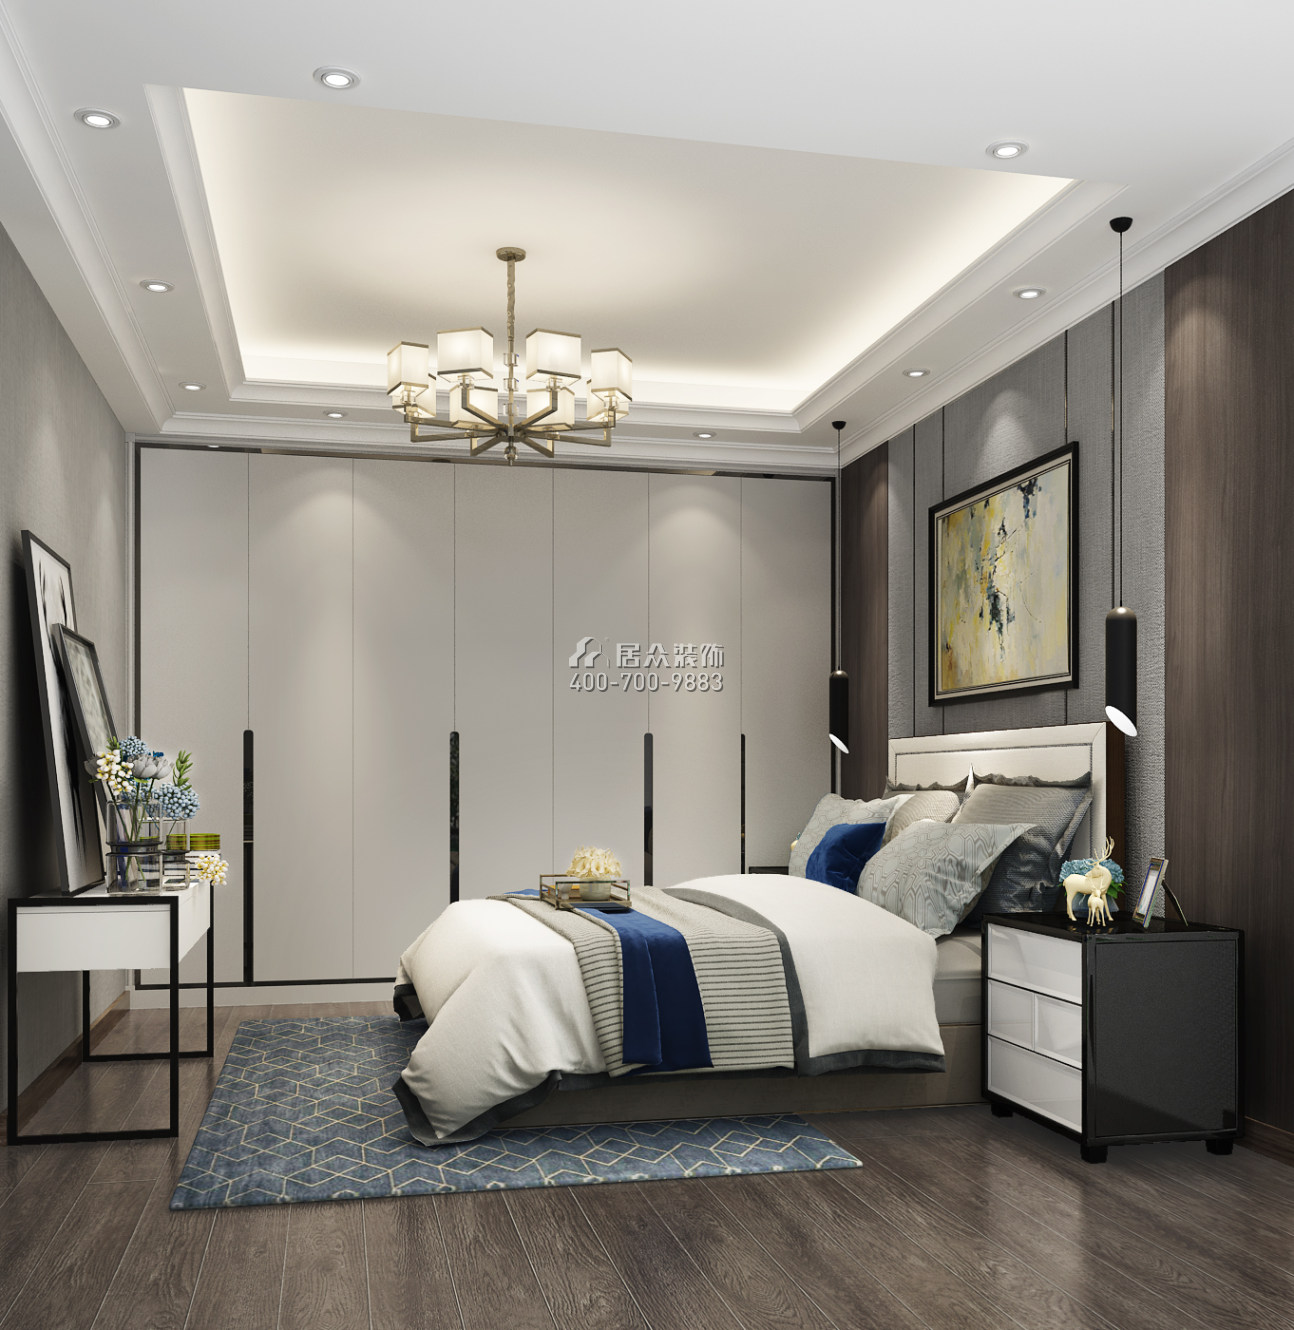 郁金香家园150平方米现代简约风格平层户型卧室kok电竞平台效果图